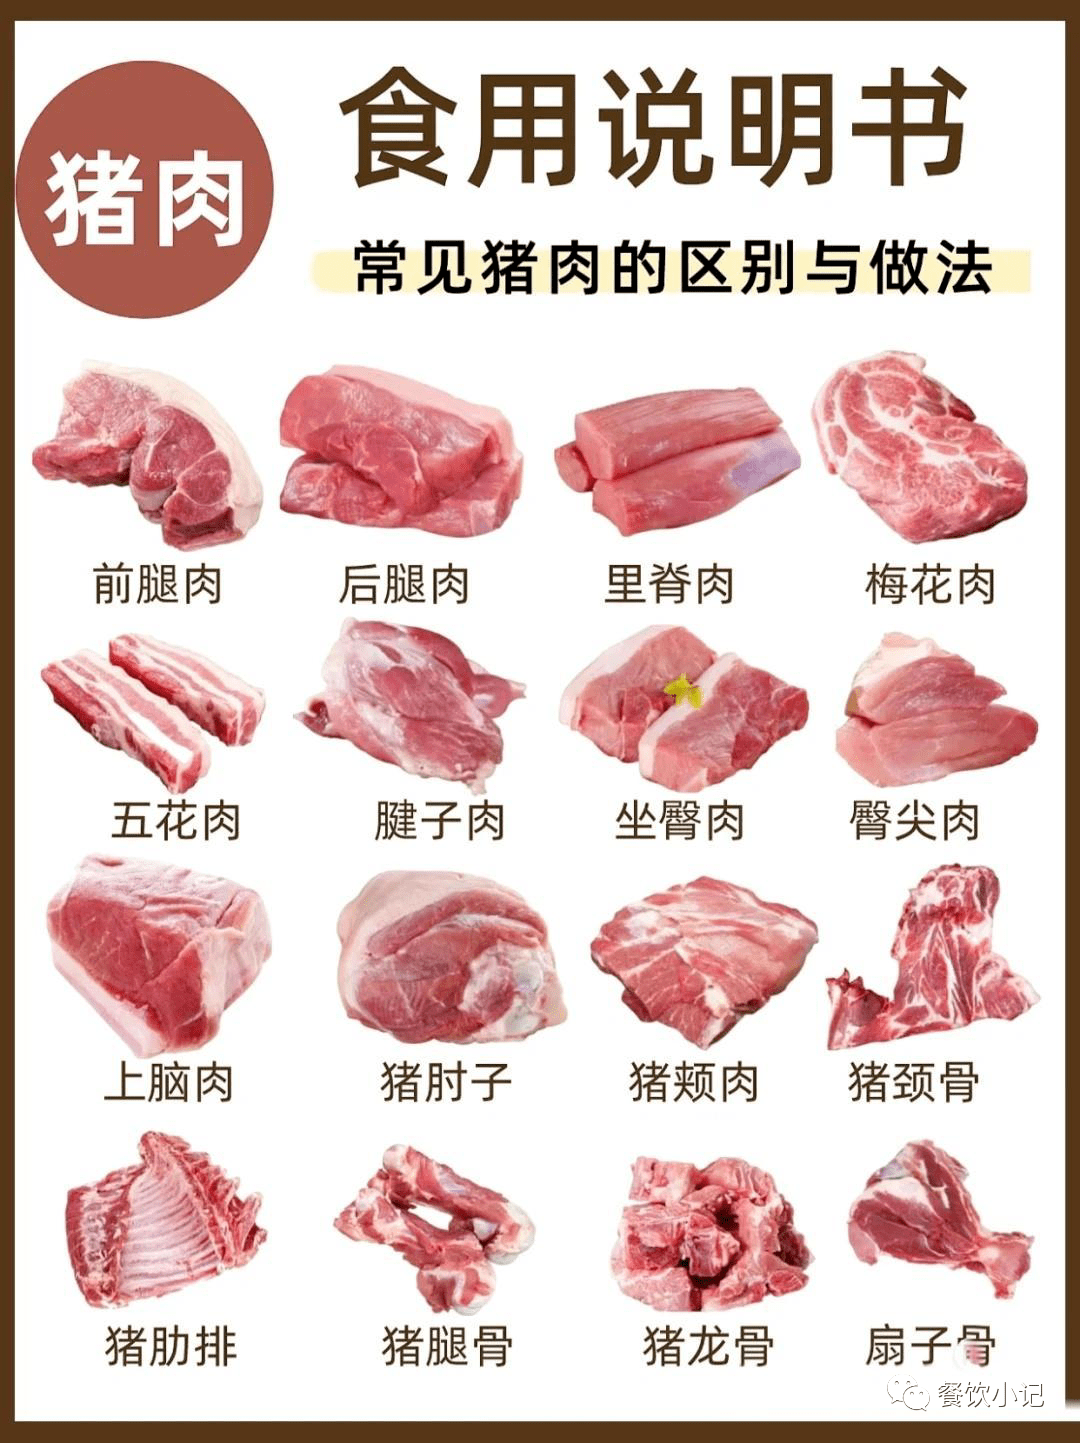 猪肉,绿色老腊肉|都江堰市堰岩老腊肉厂